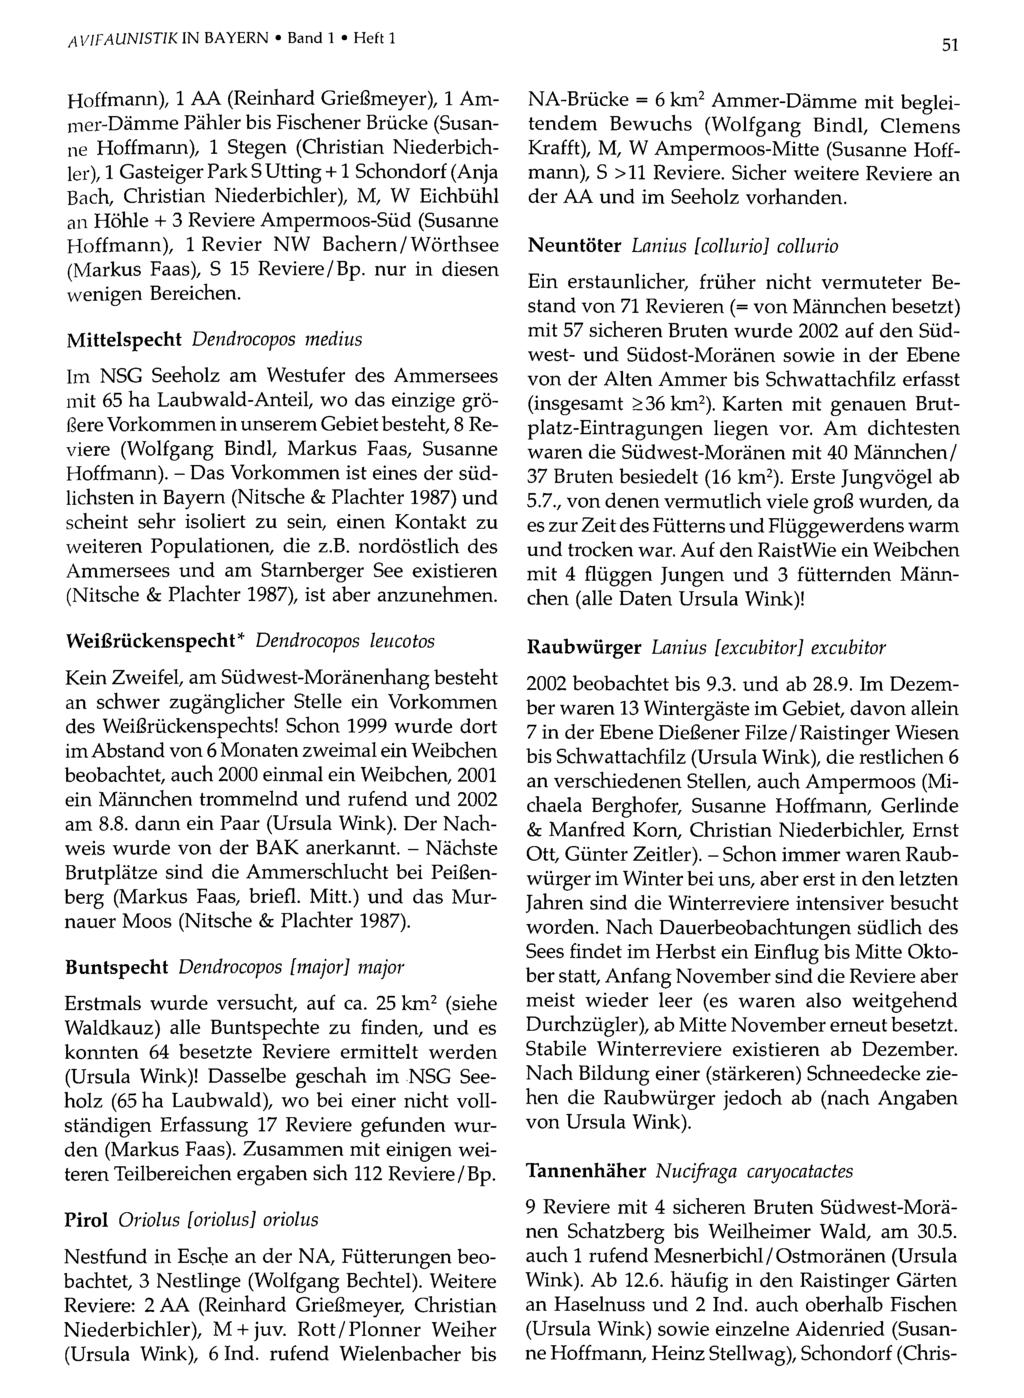 AVIFAUNISTIKIN BAYERN Band Ornithologische 1 Heft 1Gesellschaft Bayern, download unter www.biologiezentrum.